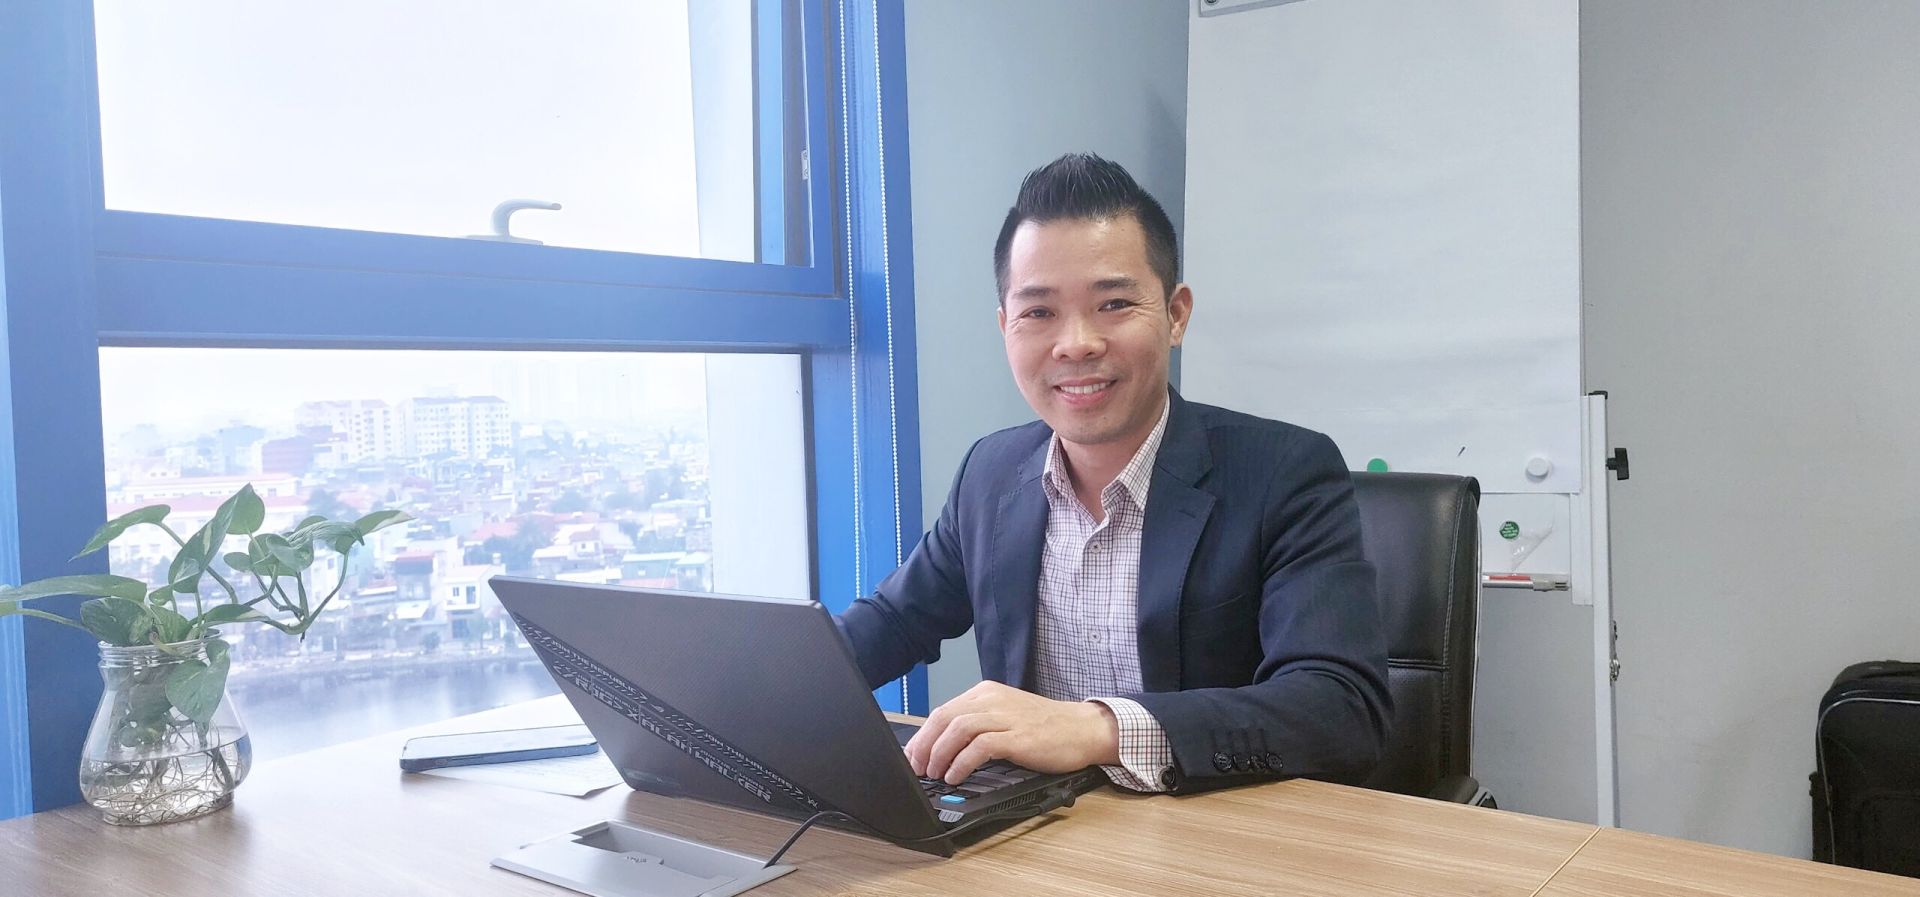 Hà Ngọc Hưng - Tổng Giám đốc Công ty Business Coaching Việt Nam, Giám đốc Vùng BNI Hải Phòng Quảng Ninh Hải Dương.